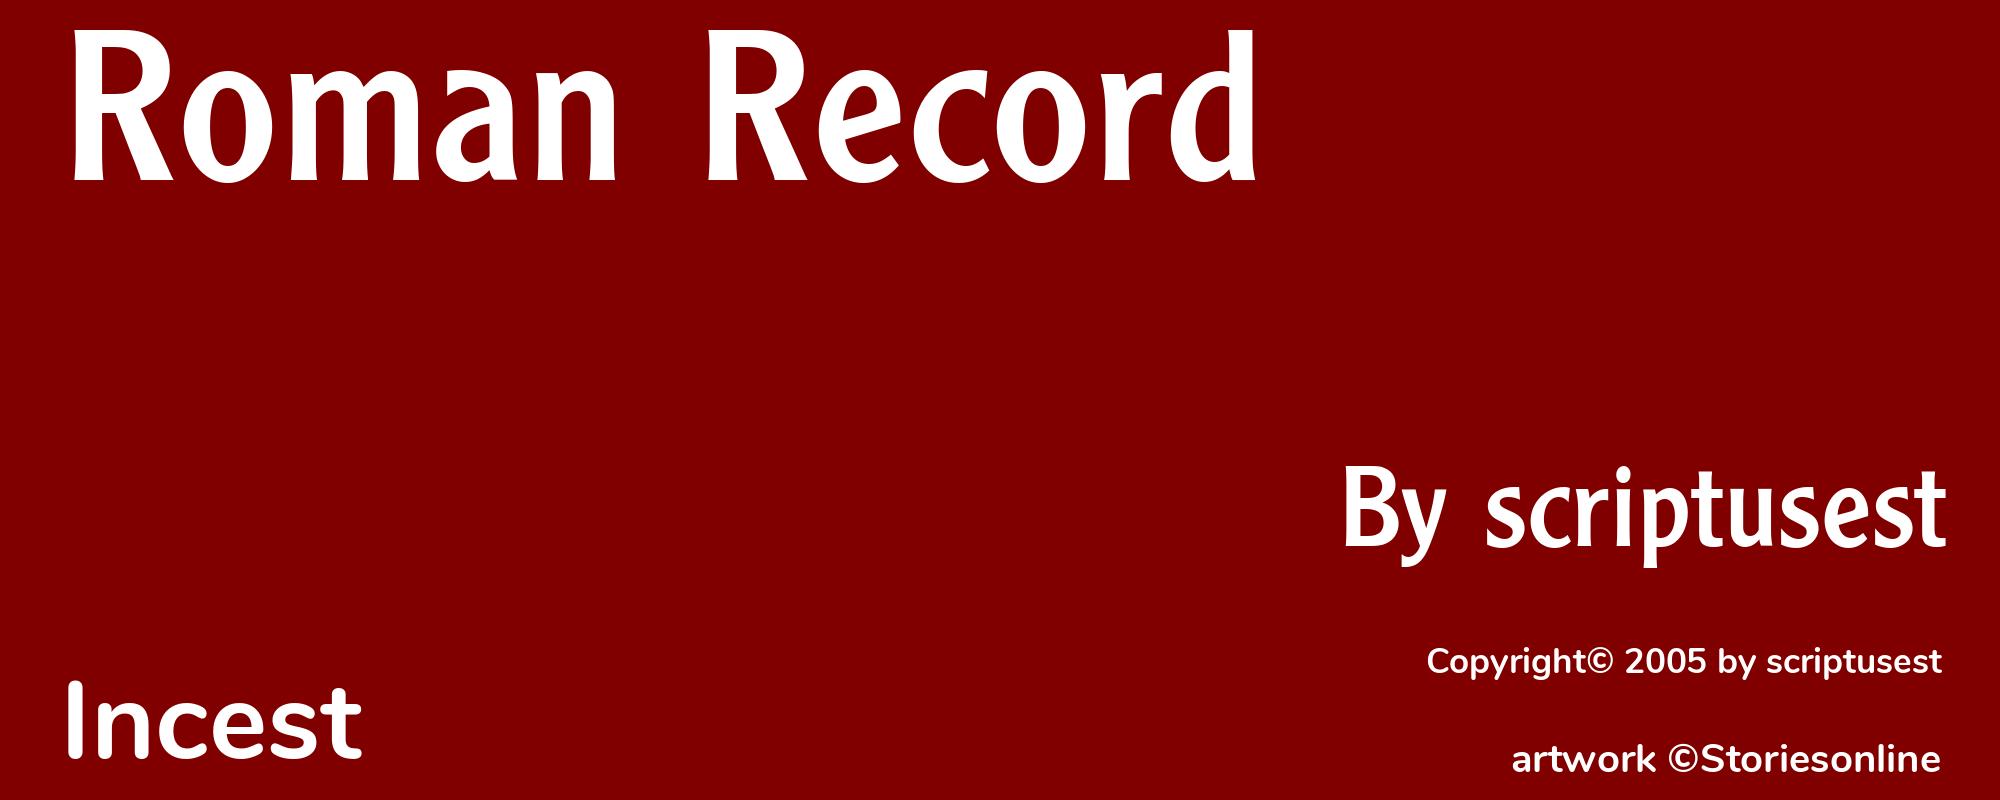 Roman Record - Cover